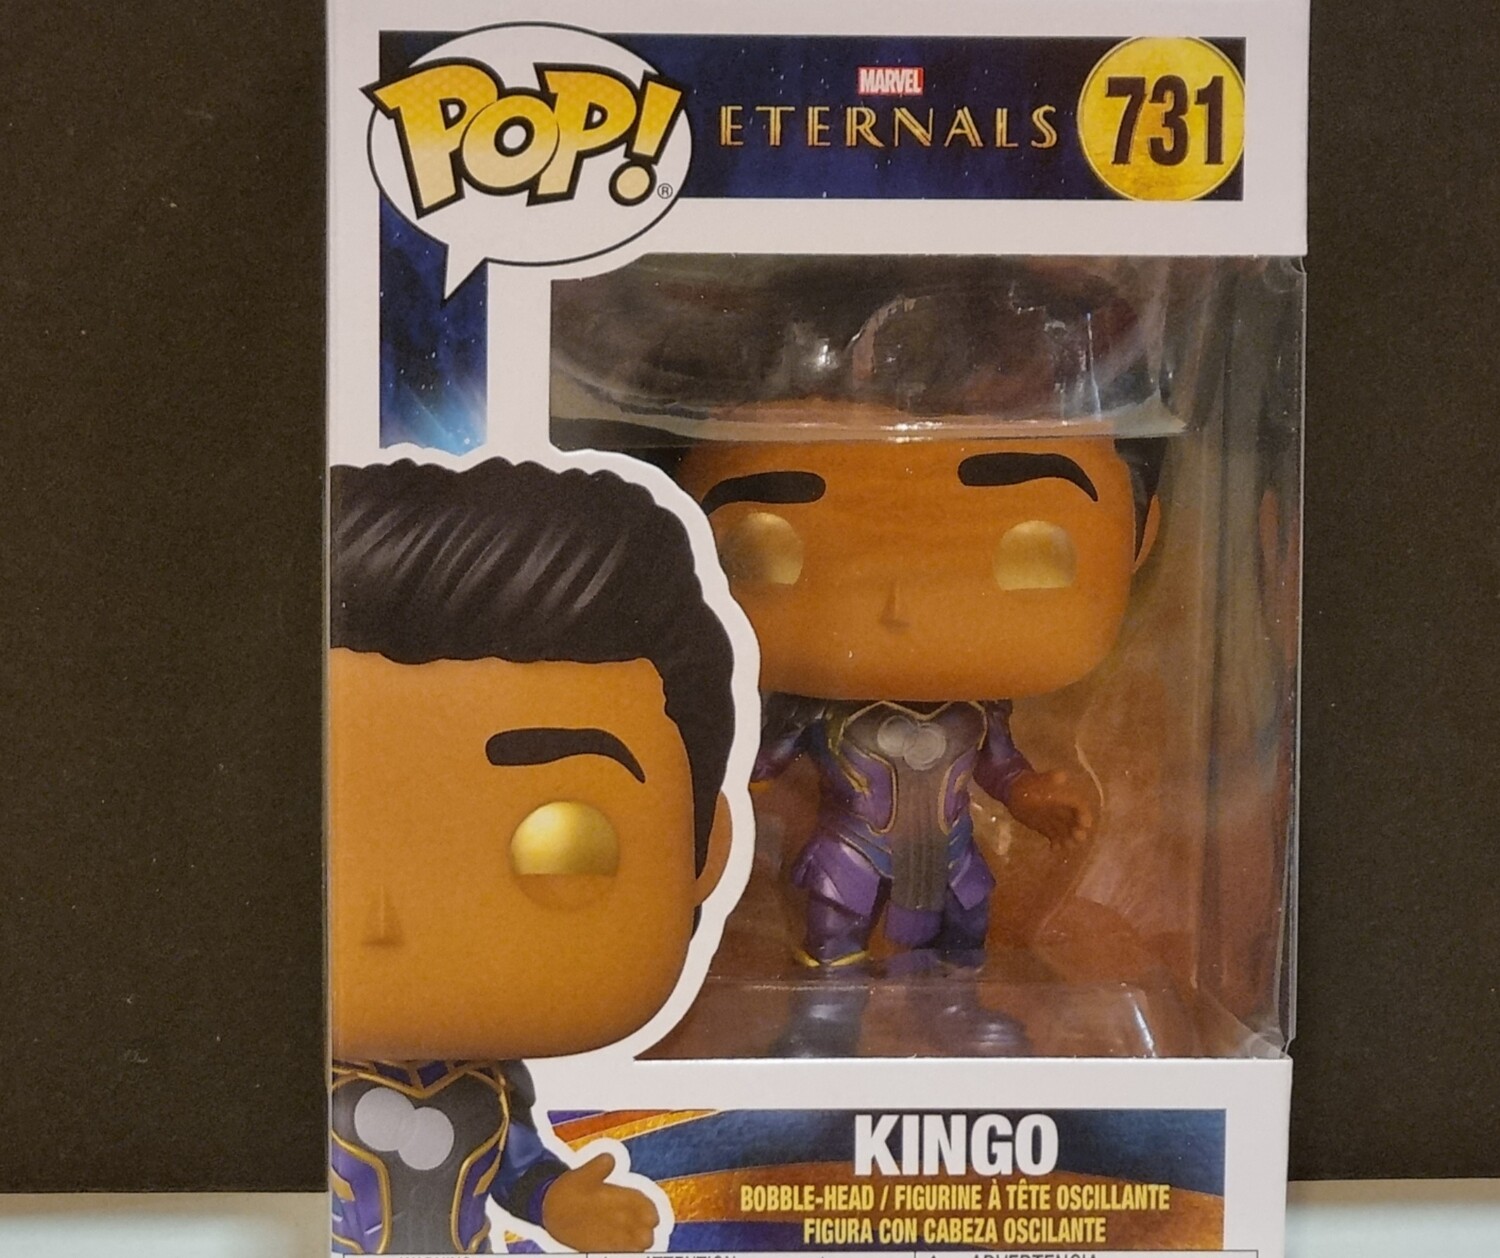 Funko Pop!, Kingo, #731, Marvel, Eternals